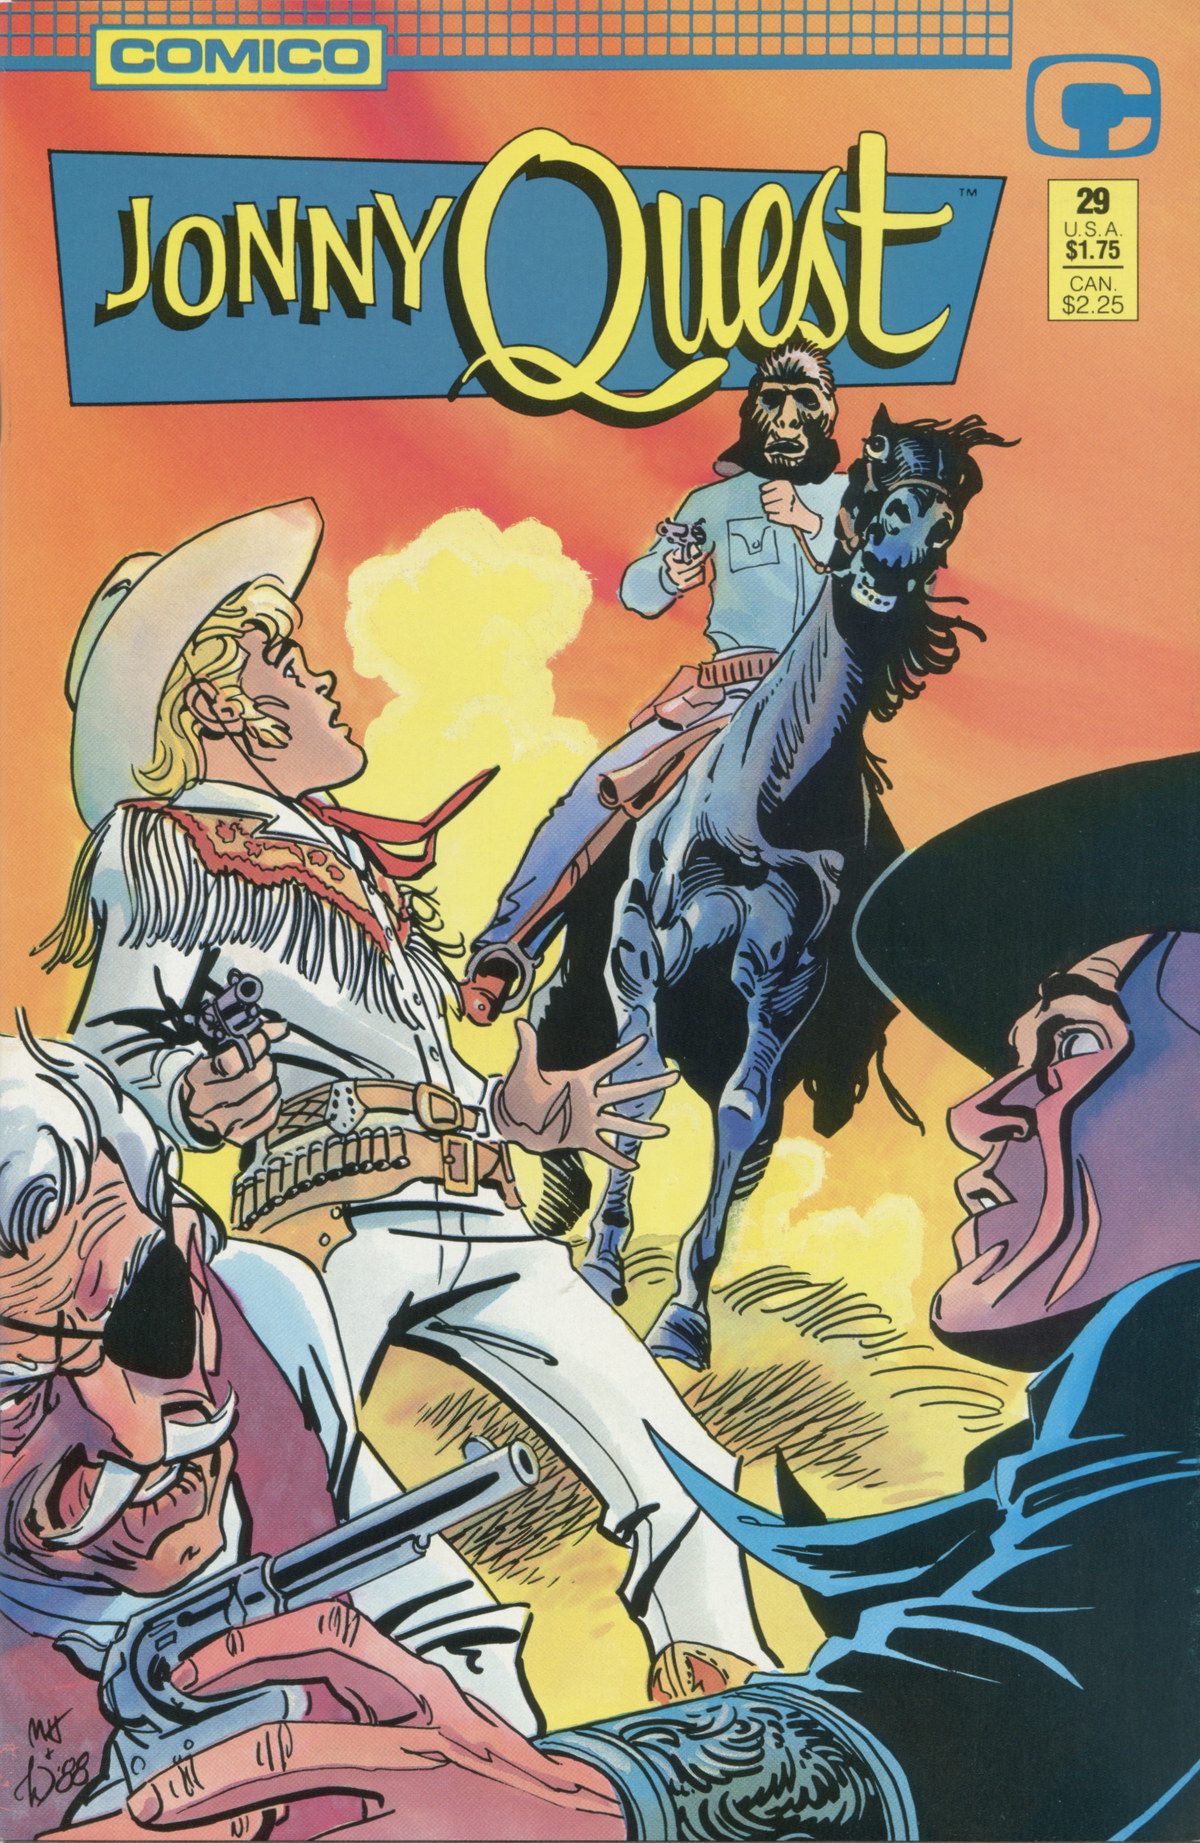 Read online Jonny Quest comic -  Issue #29 - 1